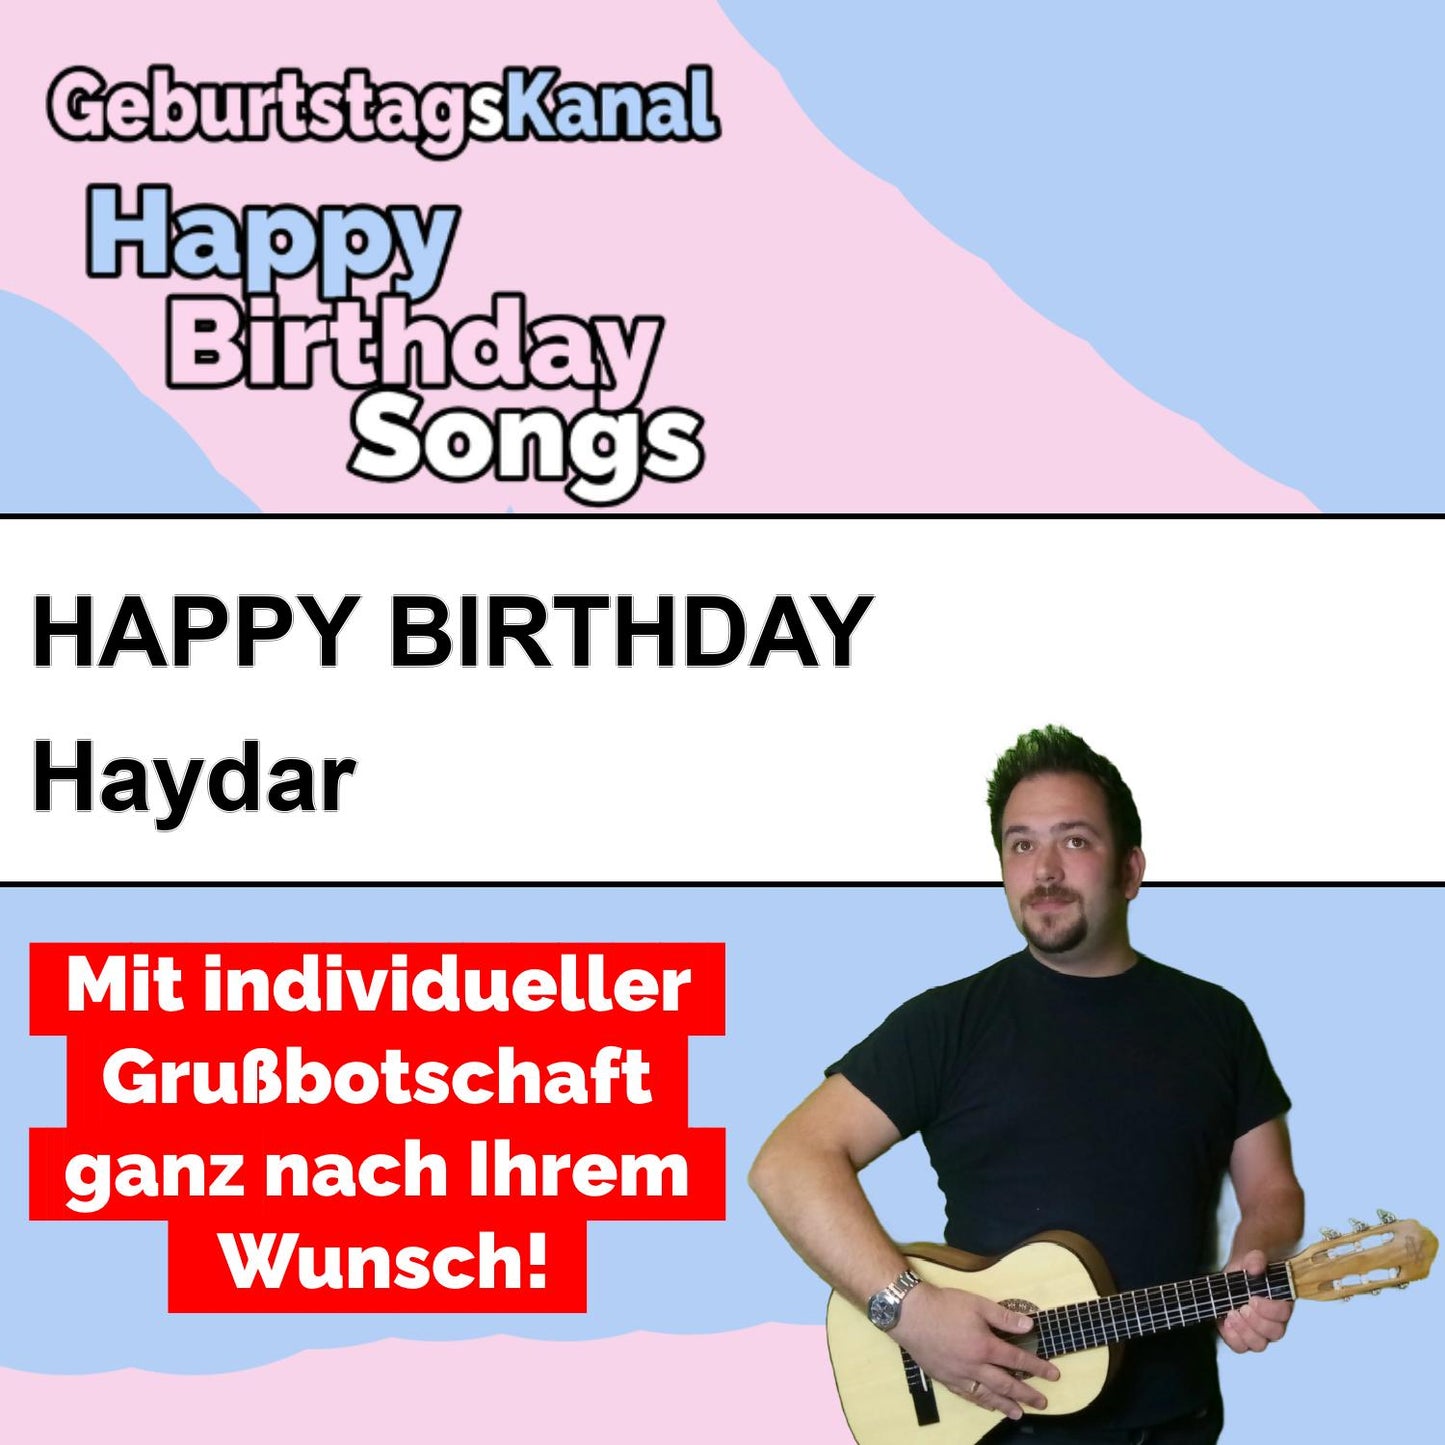 Produktbild Happy Birthday to you Haydar mit Wunschgrußbotschaft